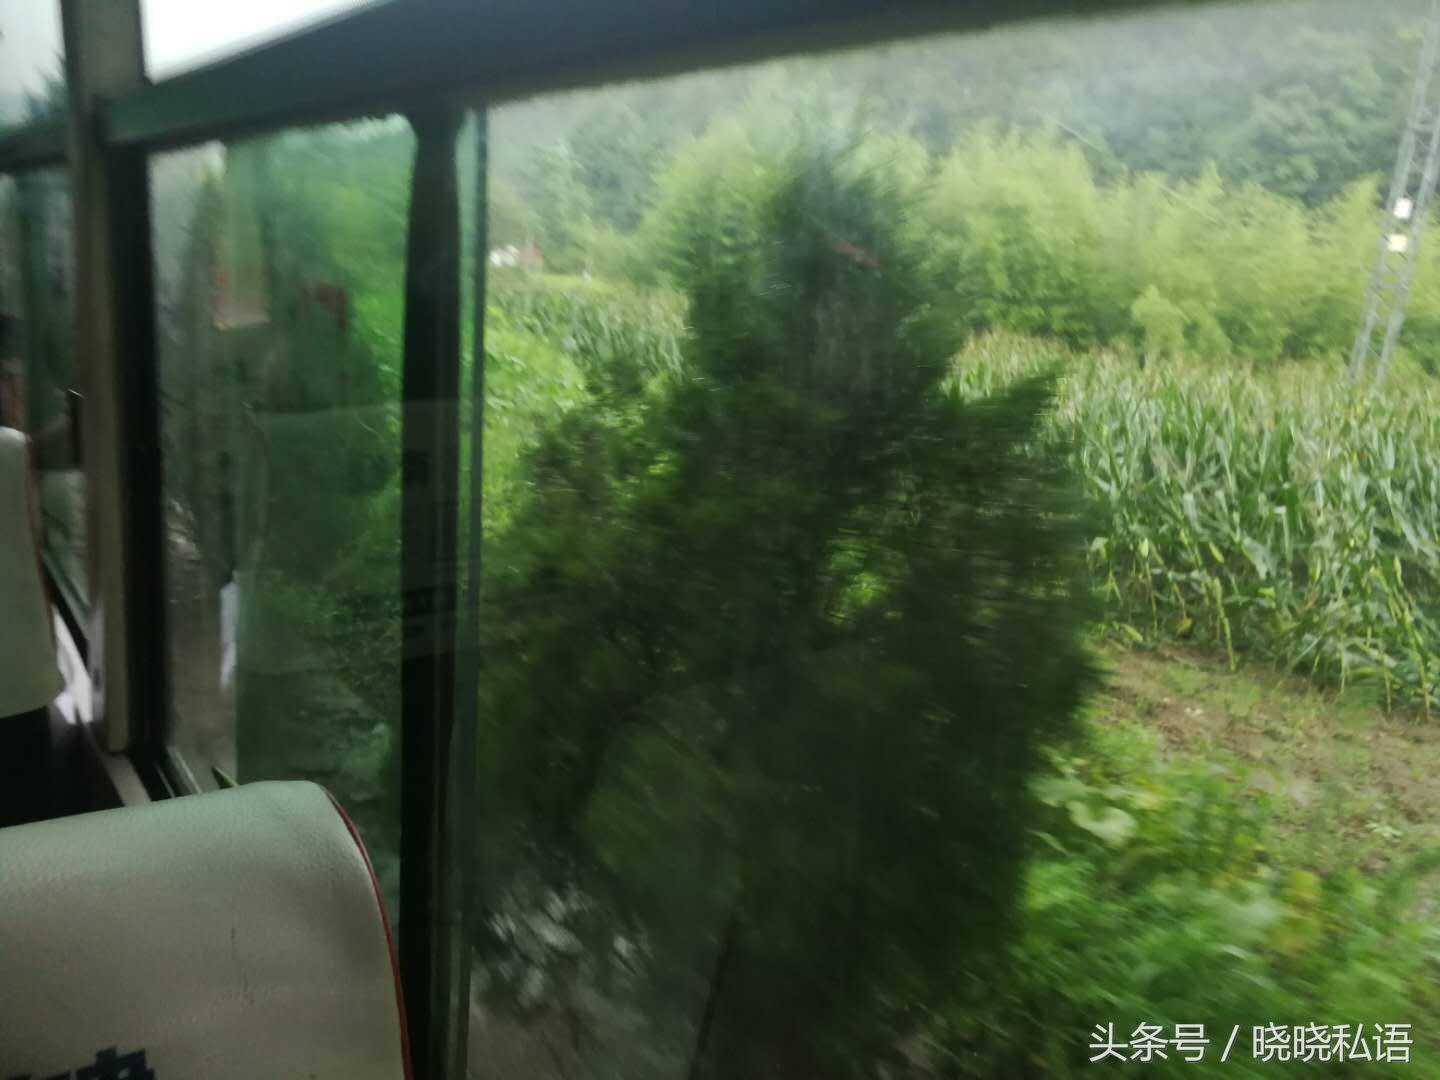 姑娘坐公交车去浙江金华1小山村,虽然道路颠簸